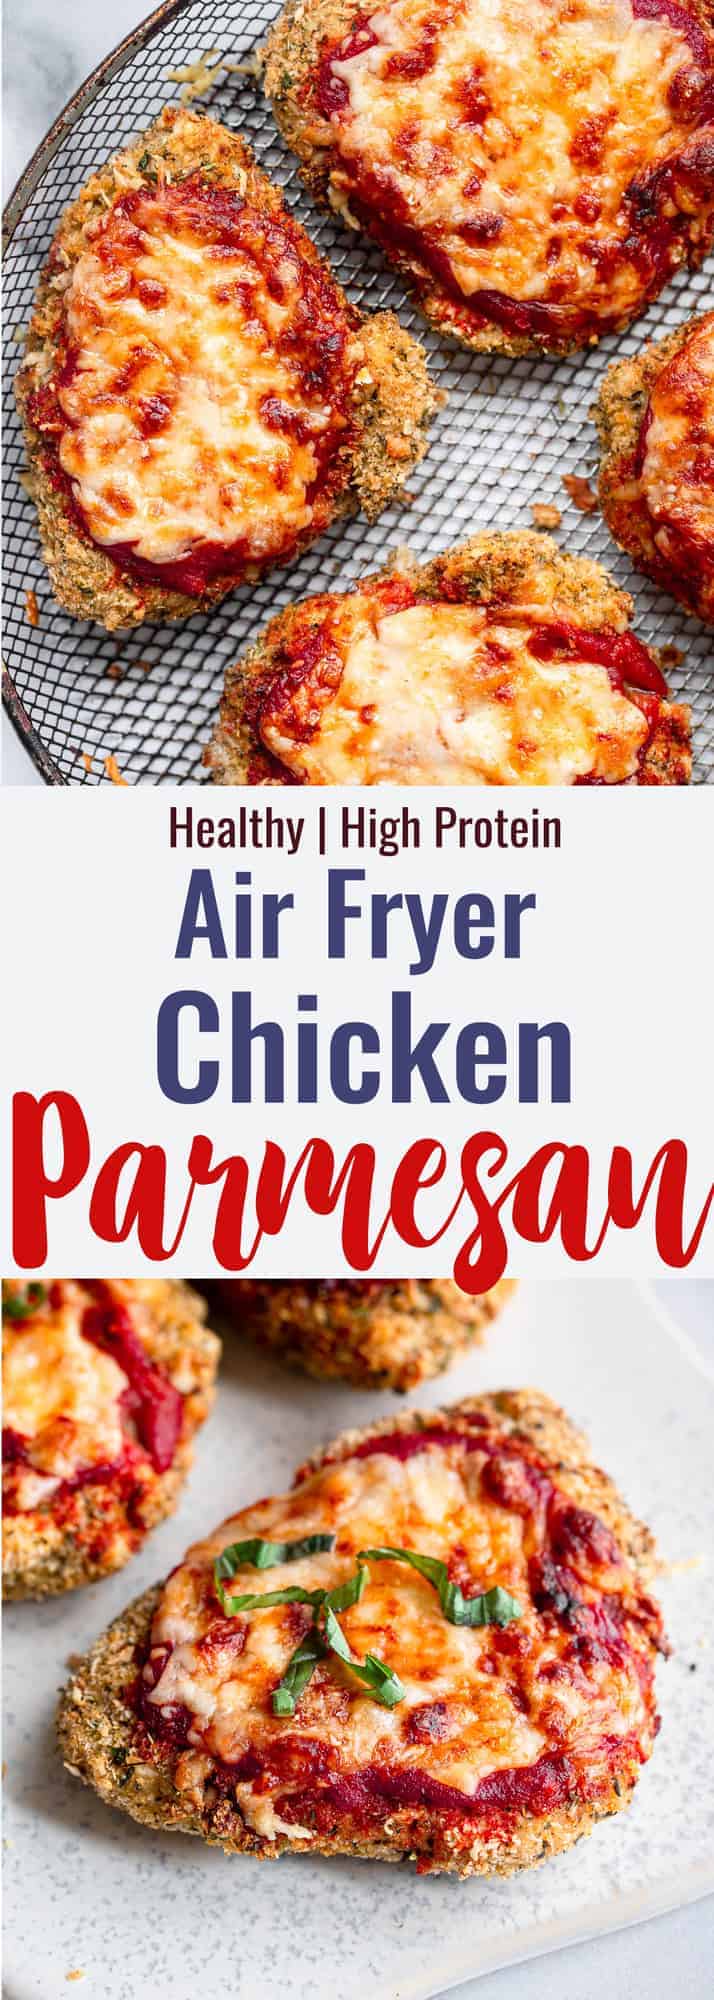 Air Fryer Chicken Parmesan collage image